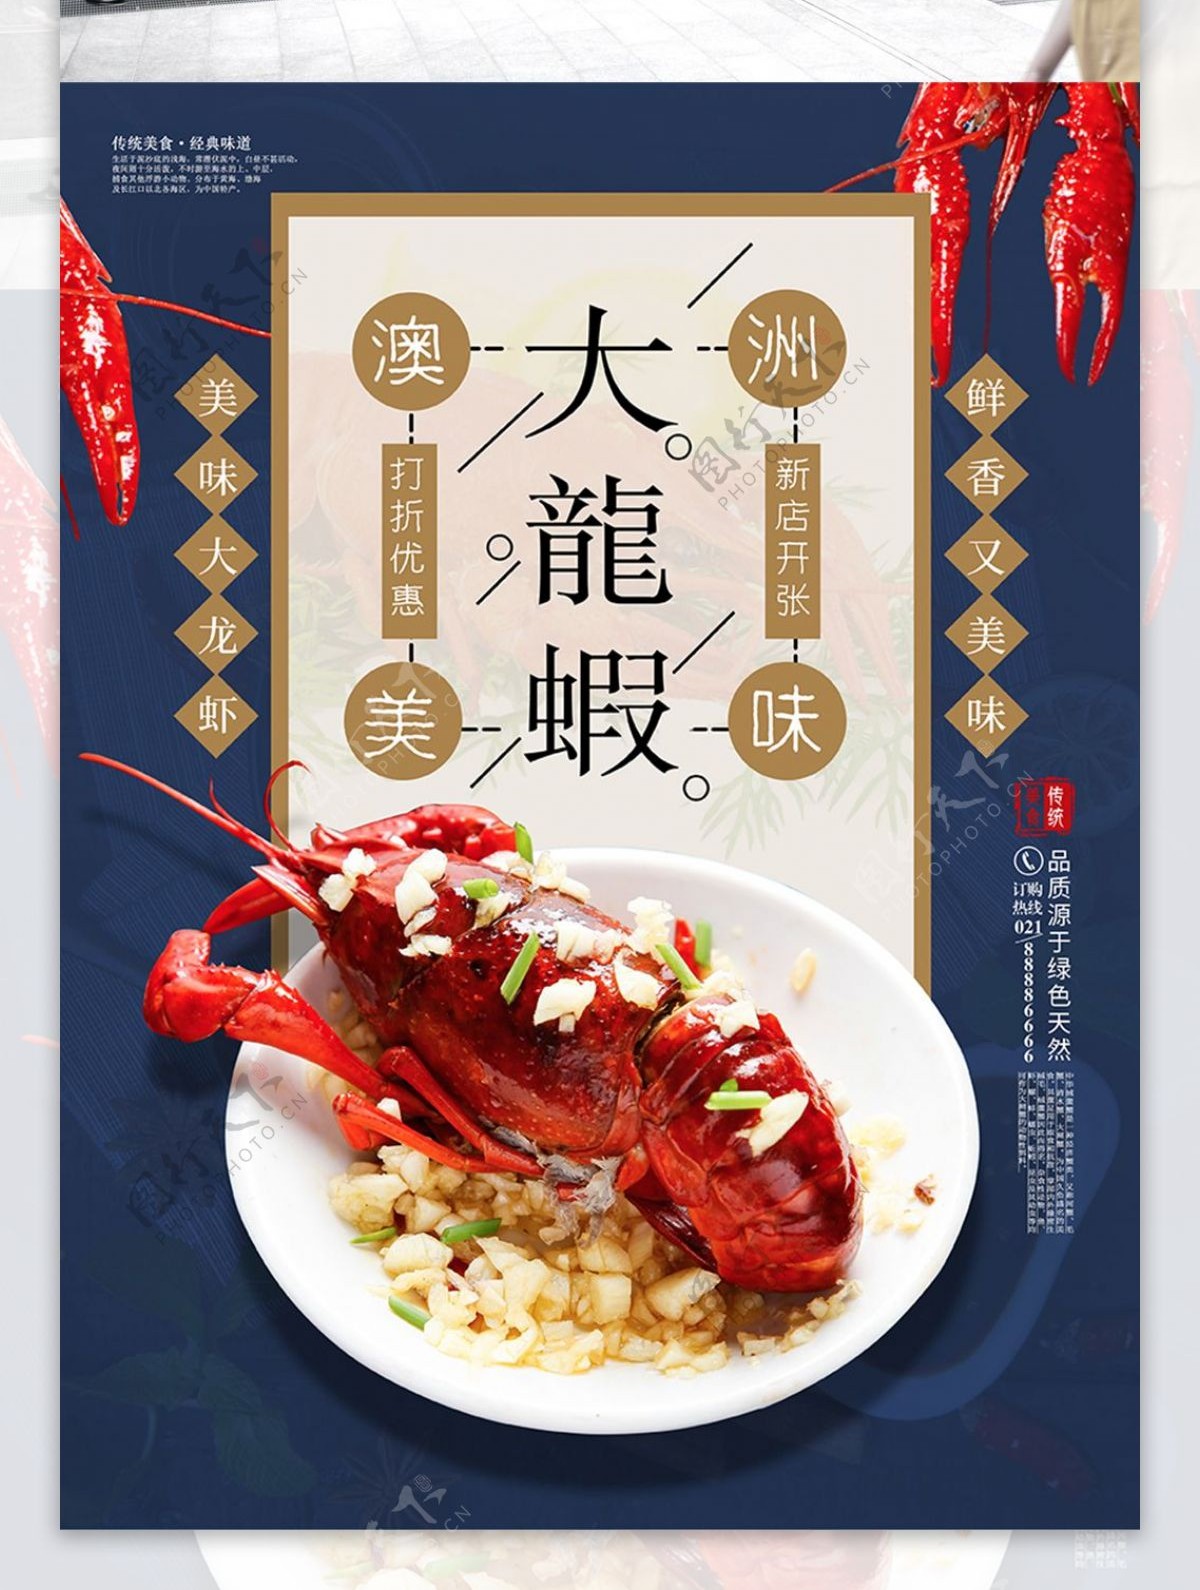 澳洲大龙虾美食海报